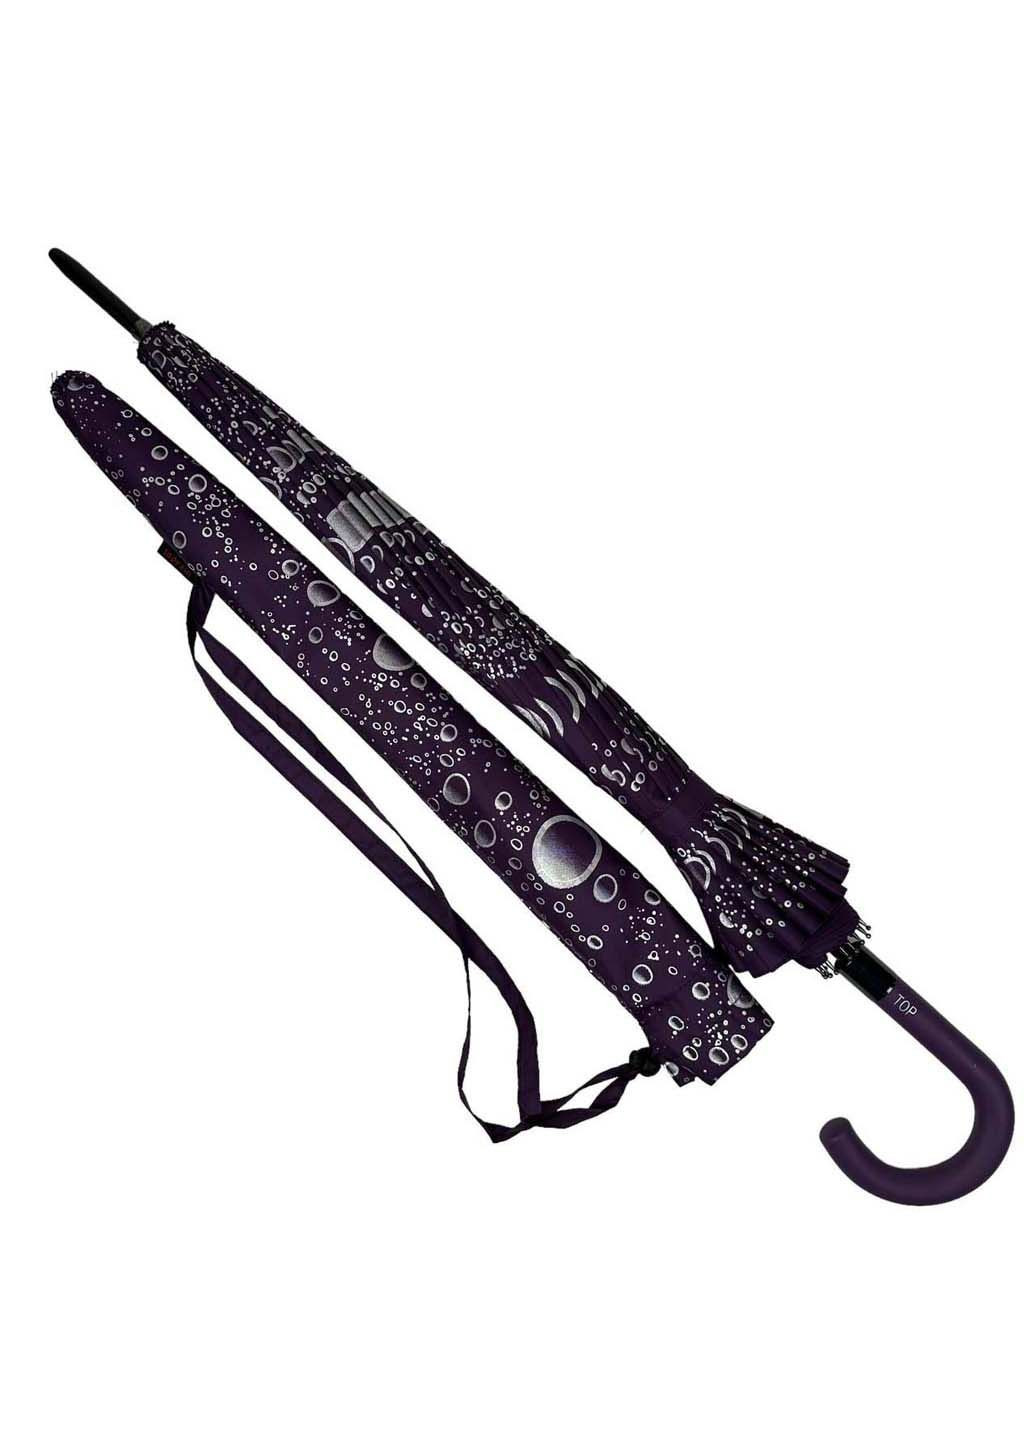 Женский зонт-трость на 16 спиц с абстрактным принтом Toprain (289977465)